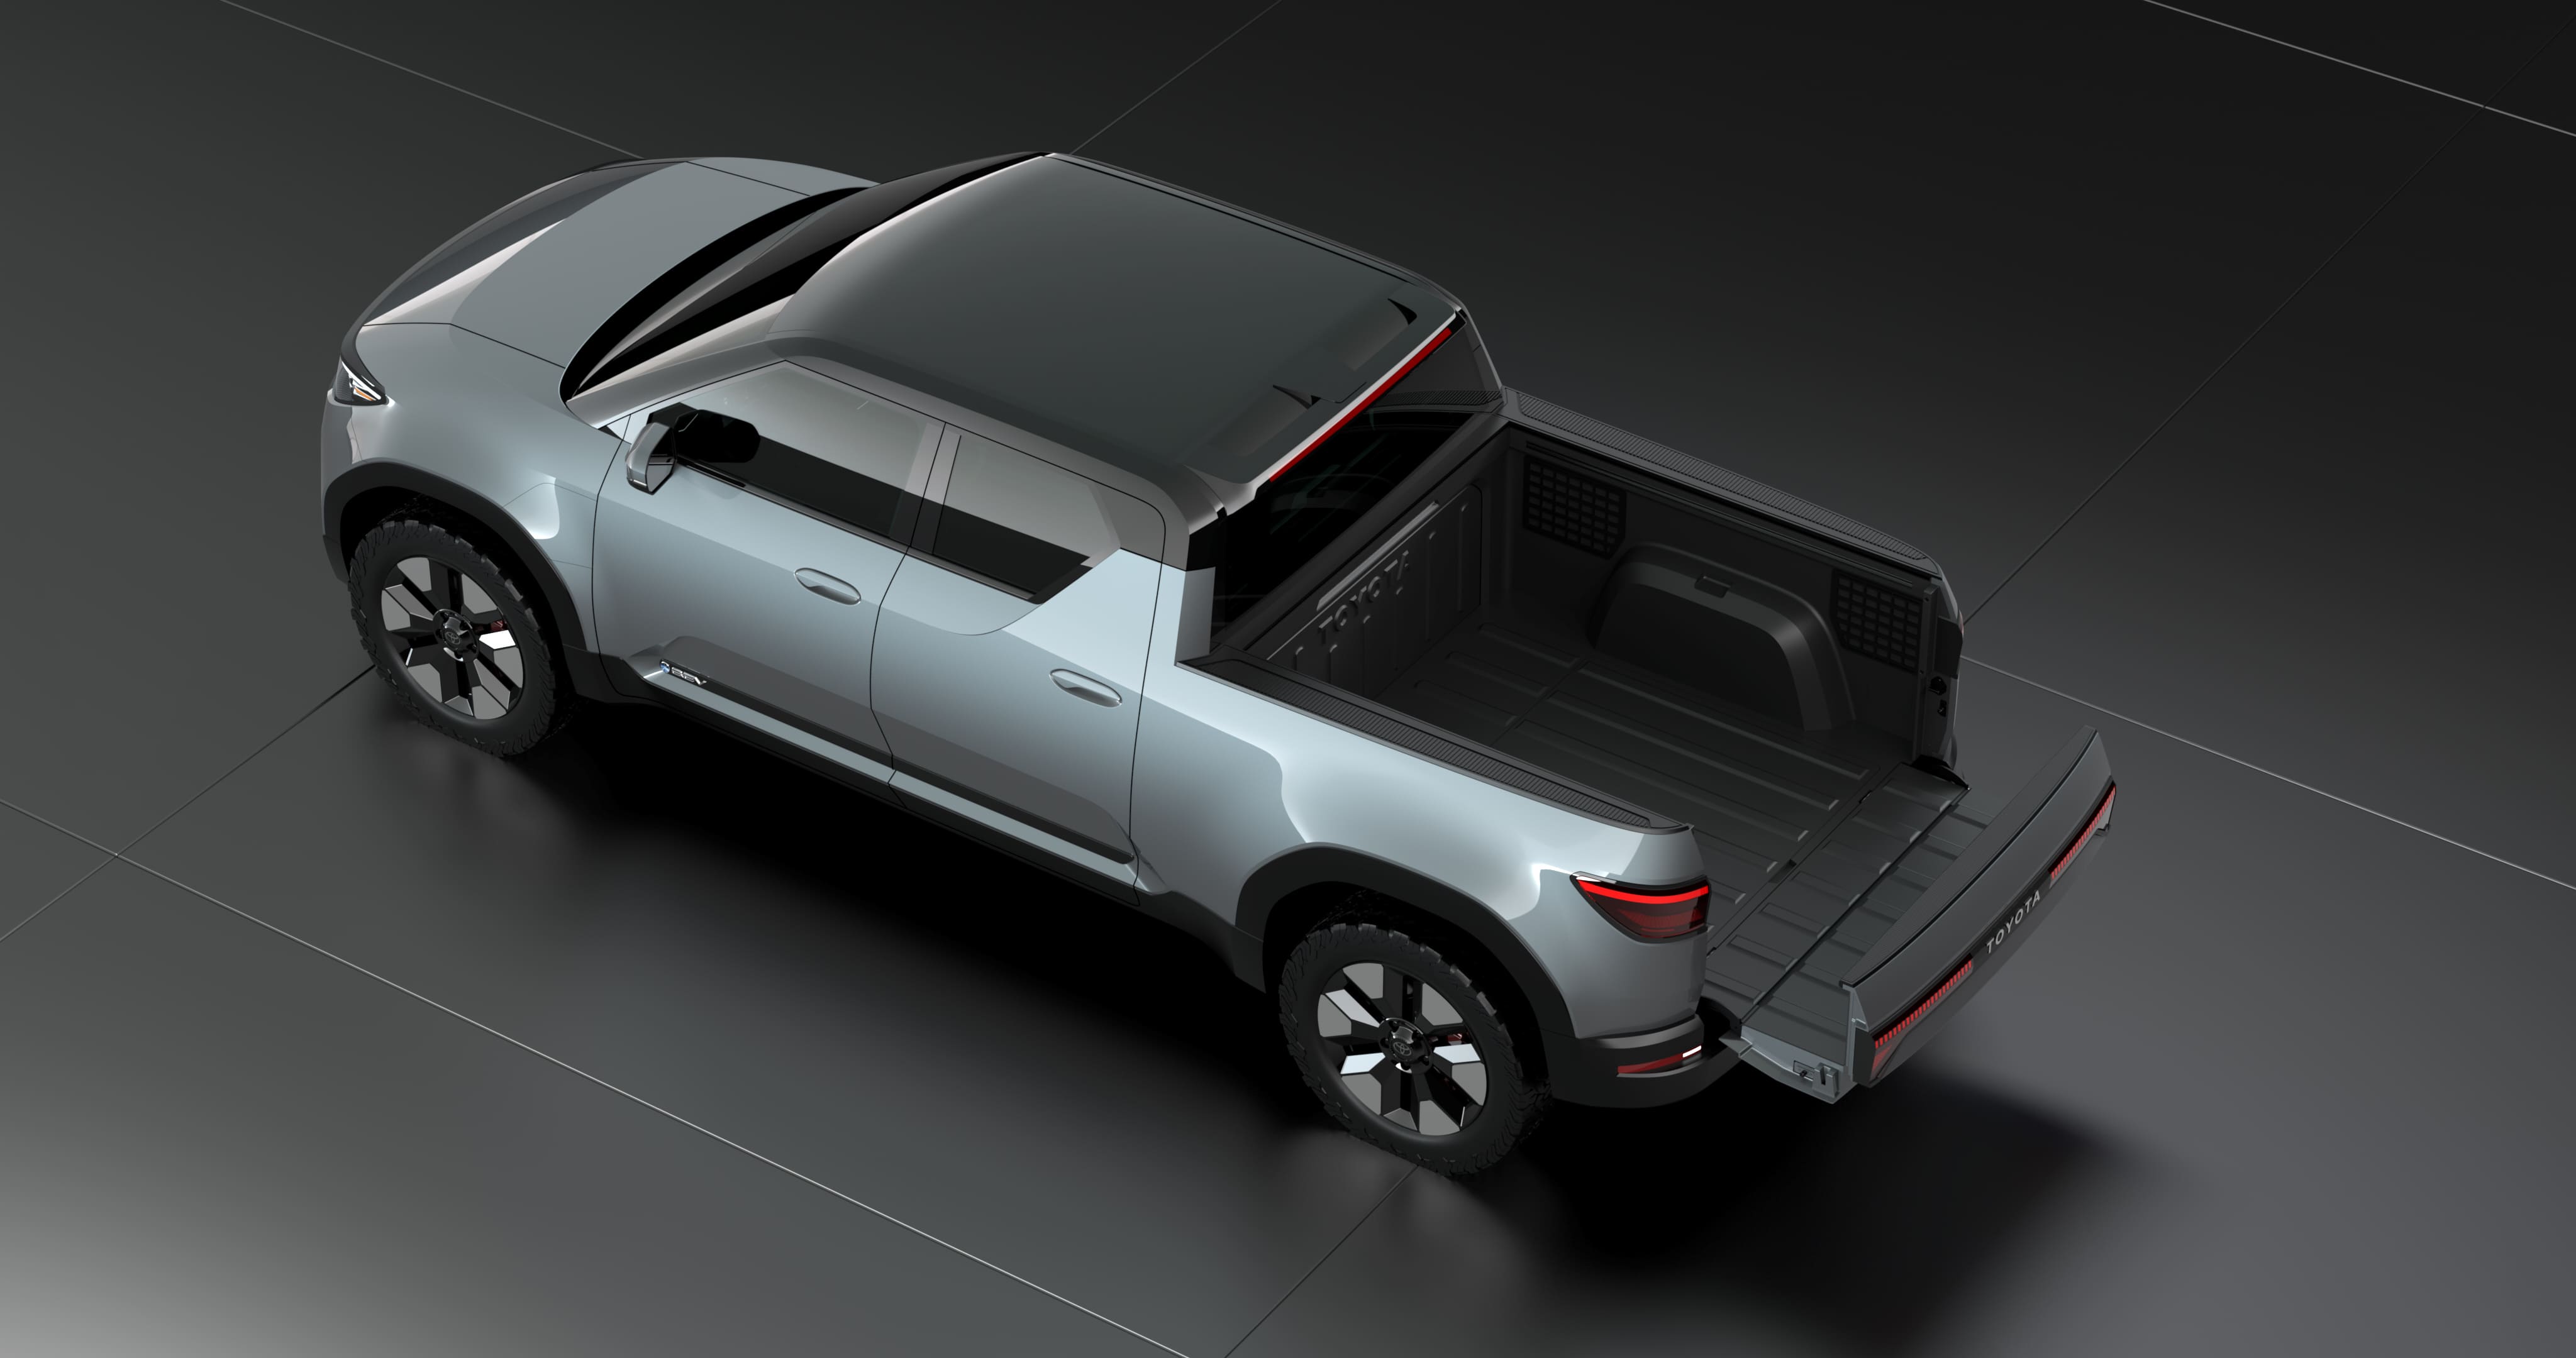 Caçamba apresenta sistema inovador de abertura Divulgação/Toyota